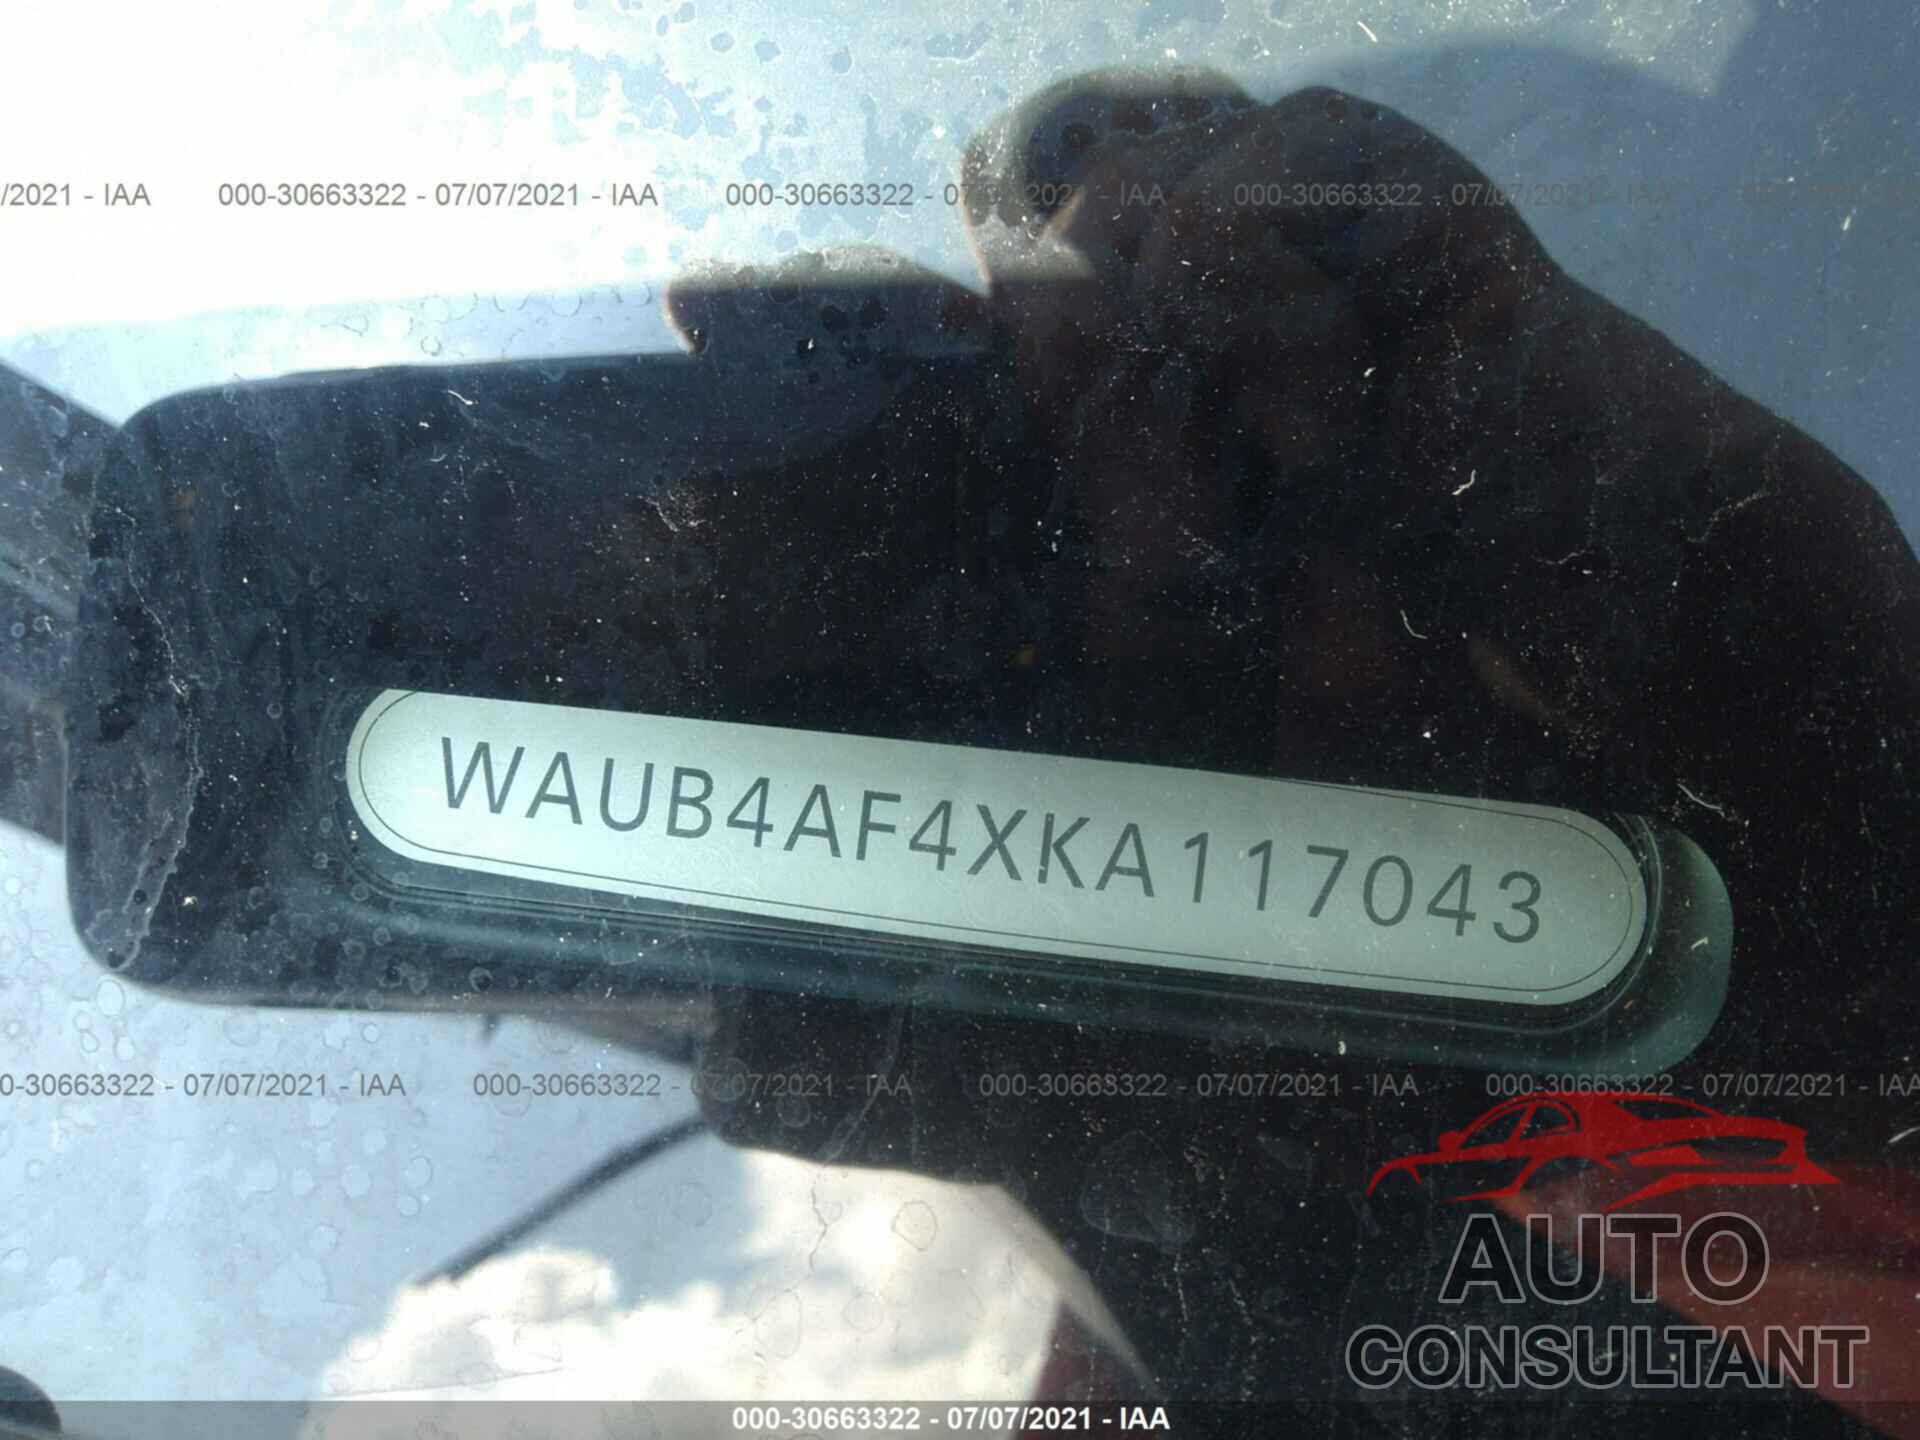 AUDI S4 2019 - WAUB4AF4XKA117043